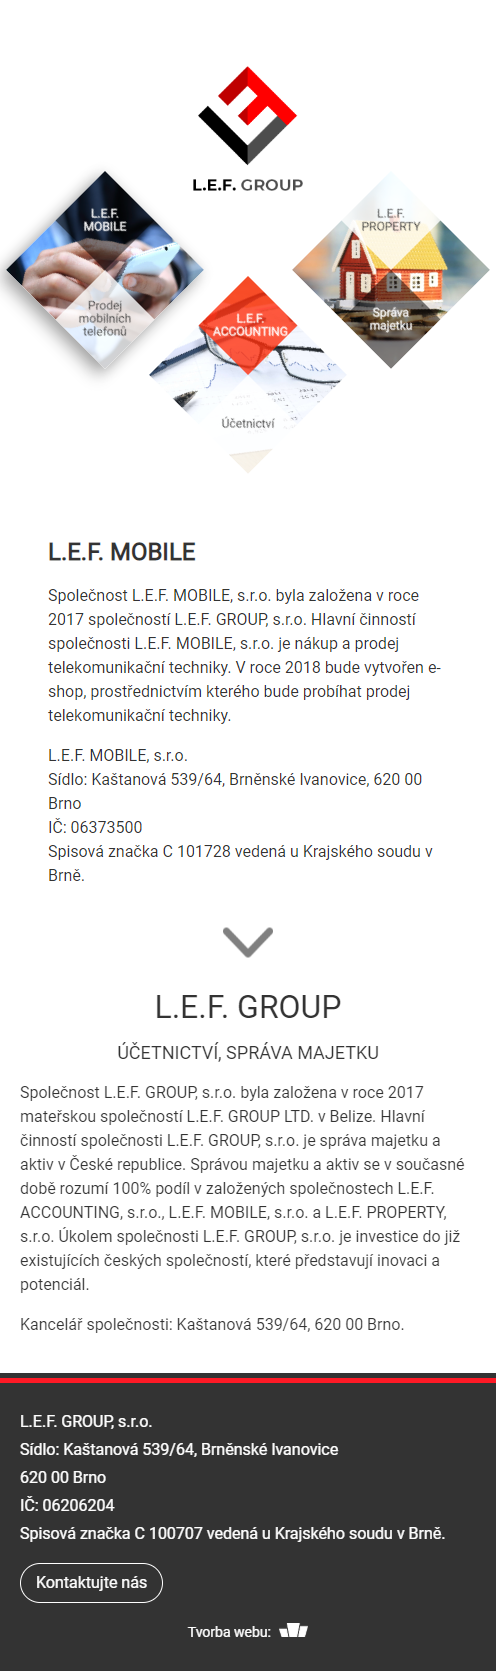 Tvorba webu pro L.E.F. group - Screenshot mobilní verze